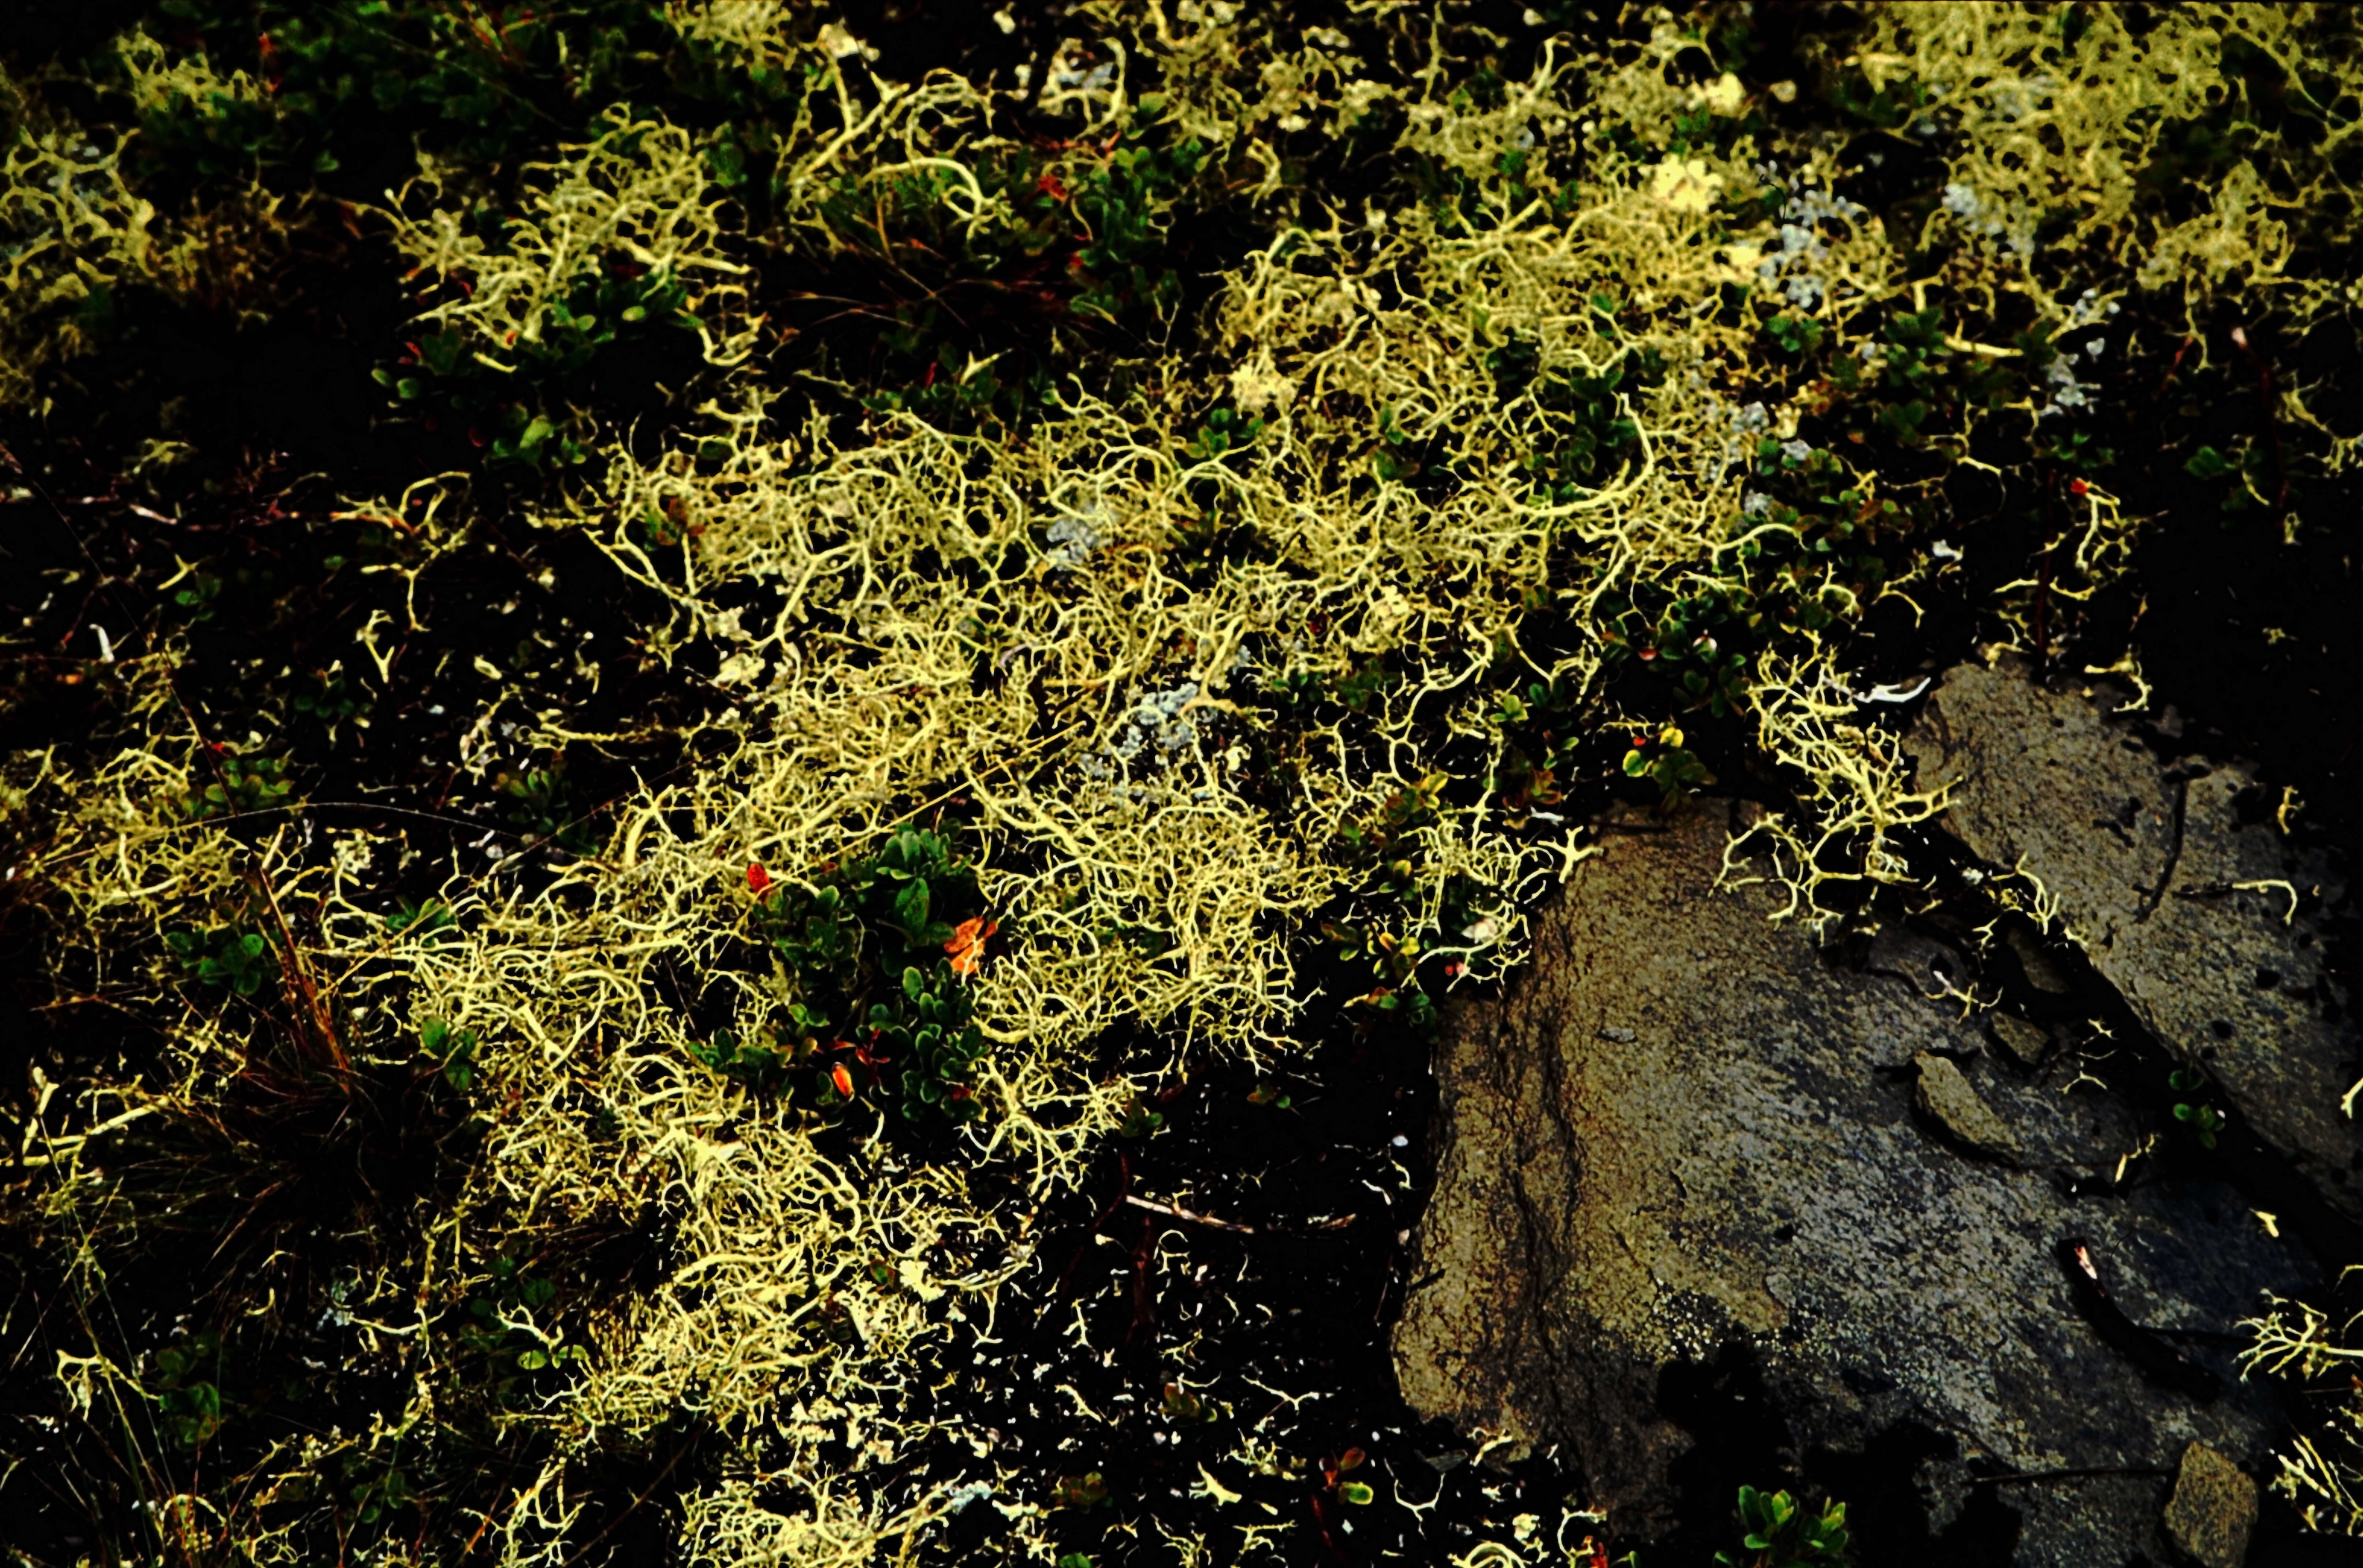 Image of island cetraria lichen